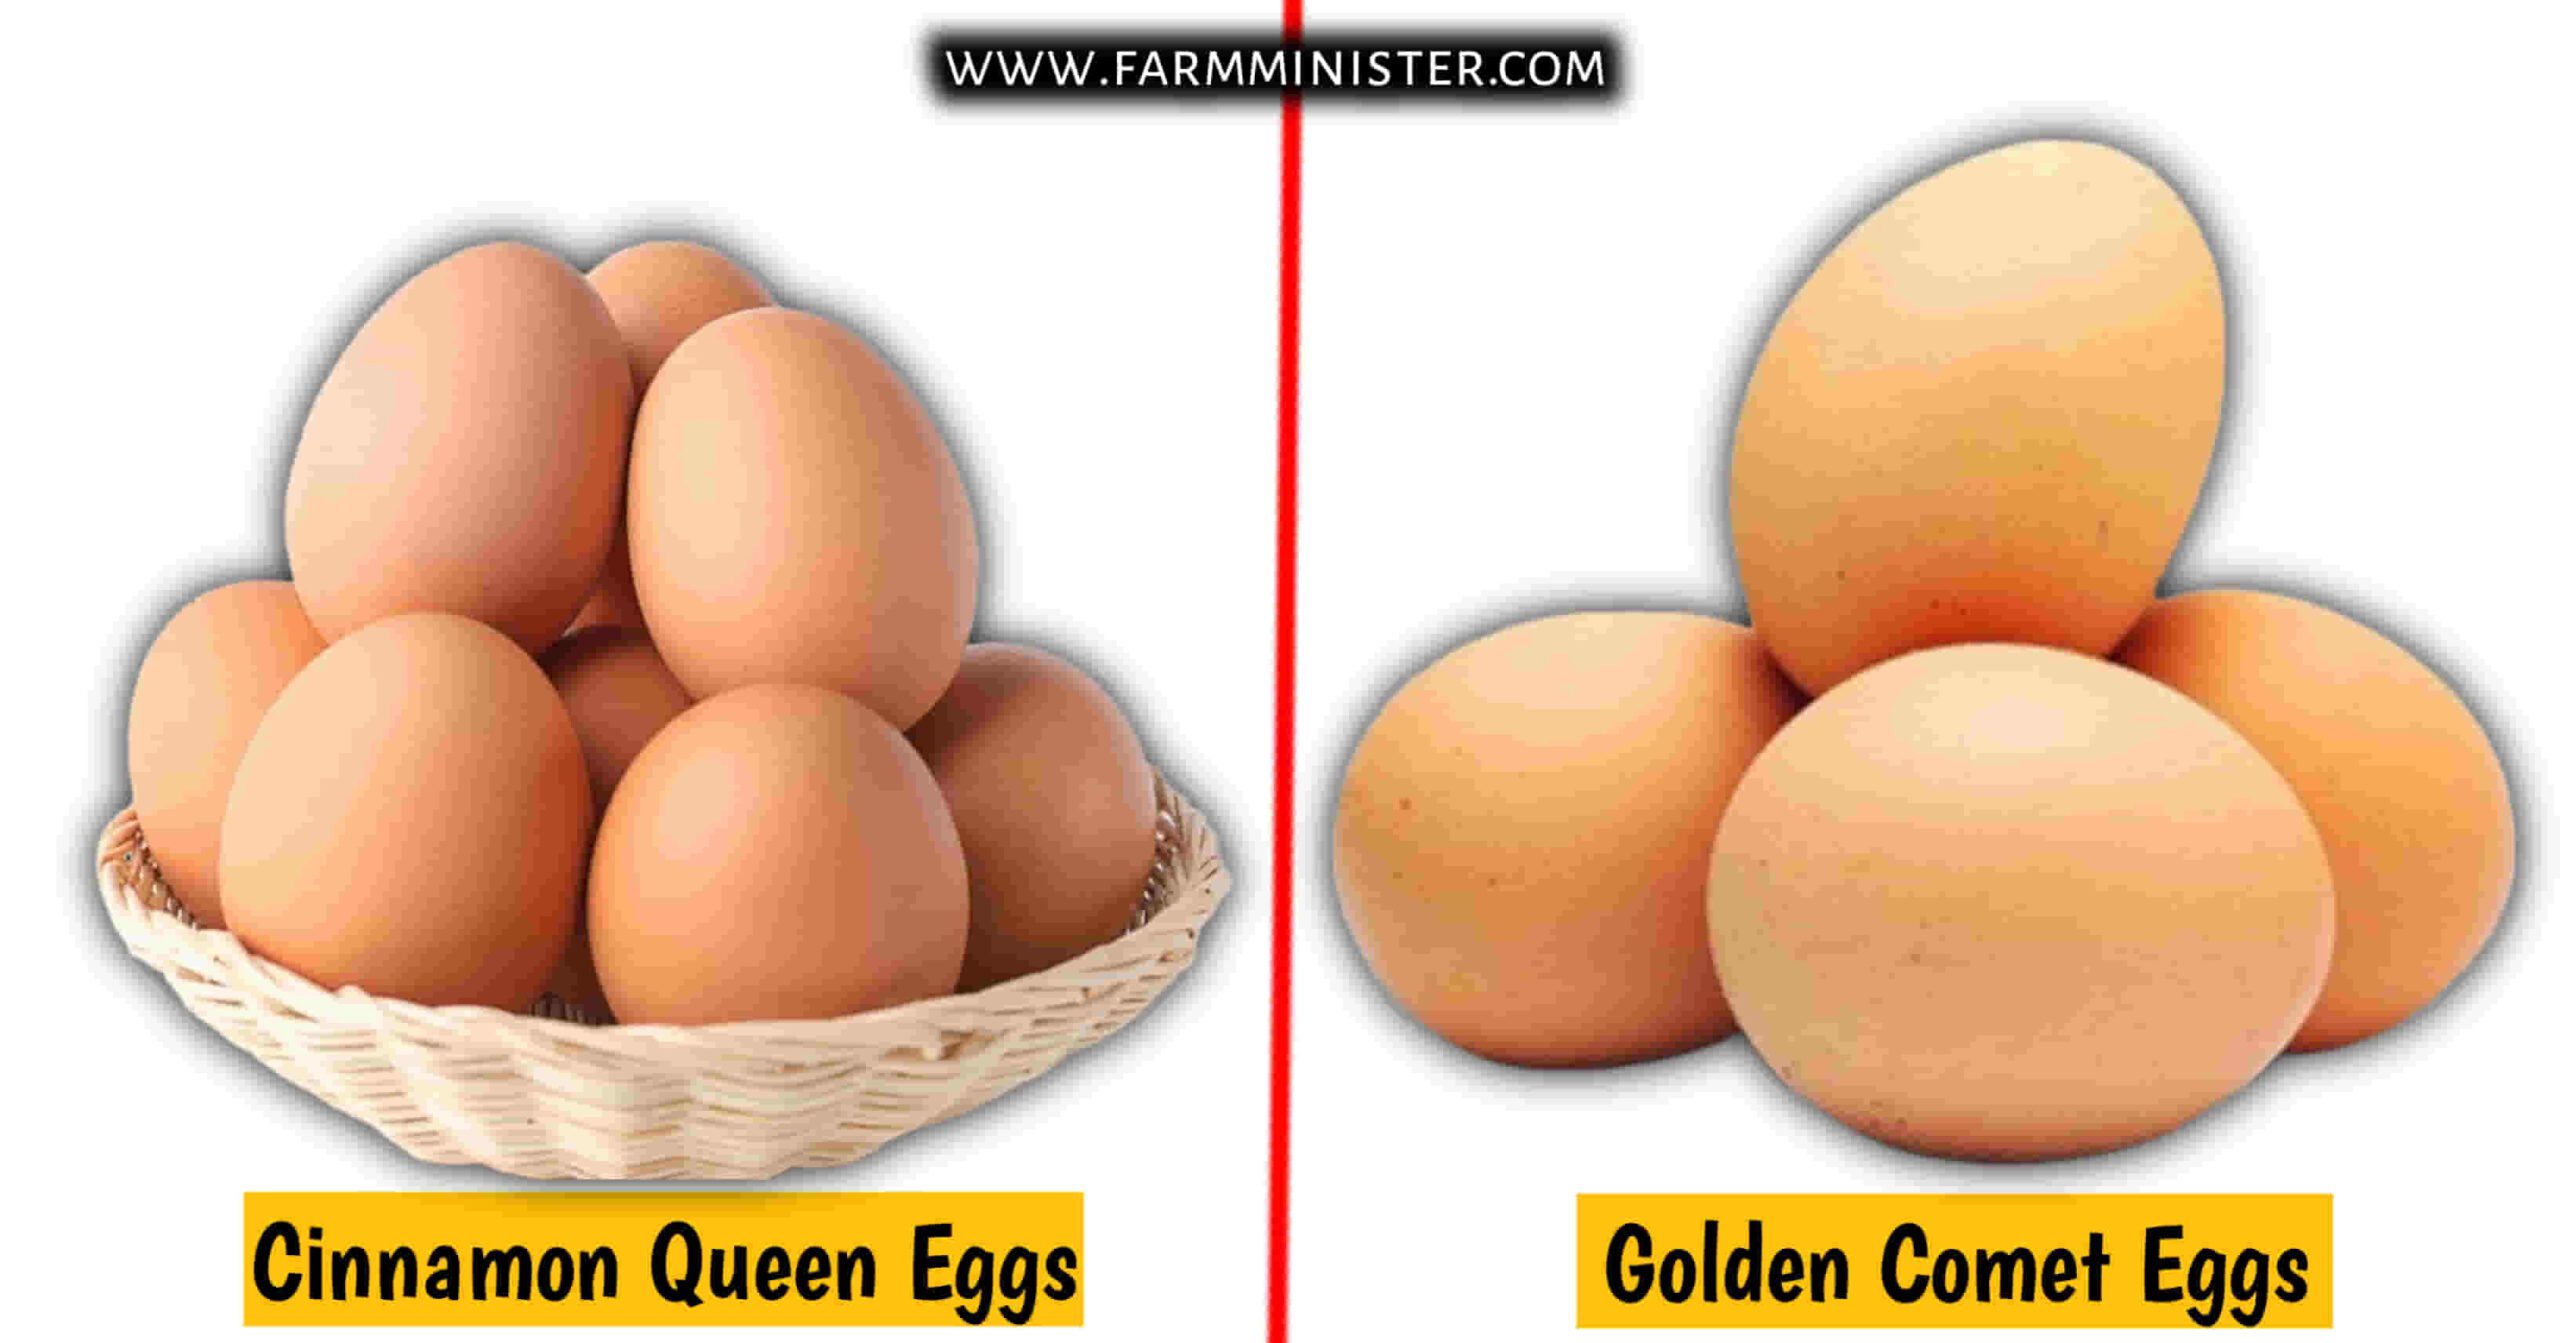 Cinnamon Queen vs Golden Comet eggs